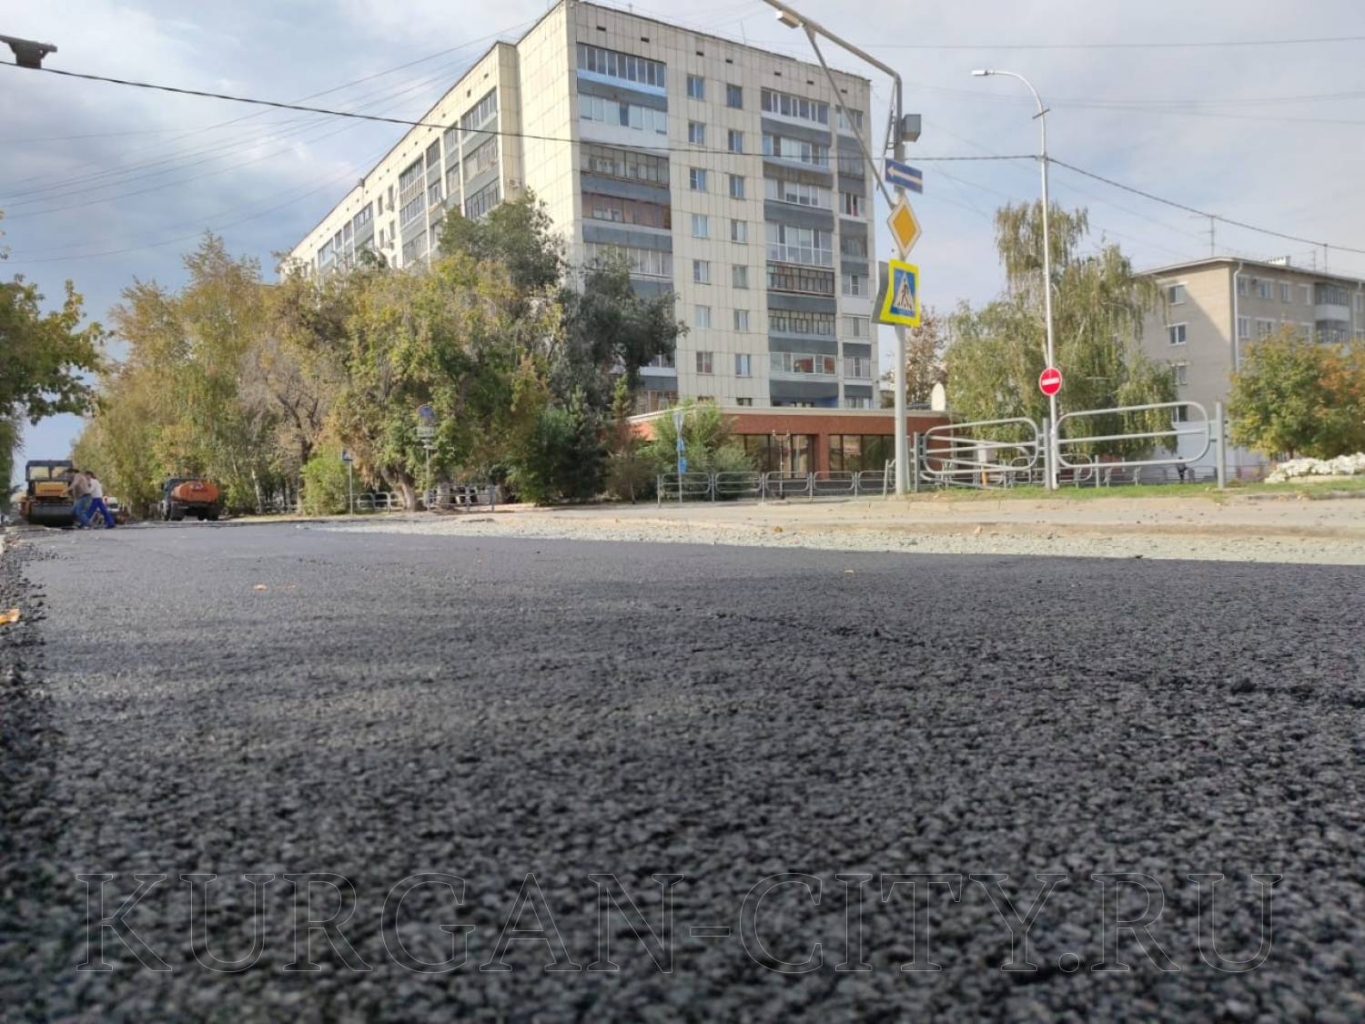 На улице М. Горького близки к завершению масштабные ремонтные работы по замене изношенных теплосетей